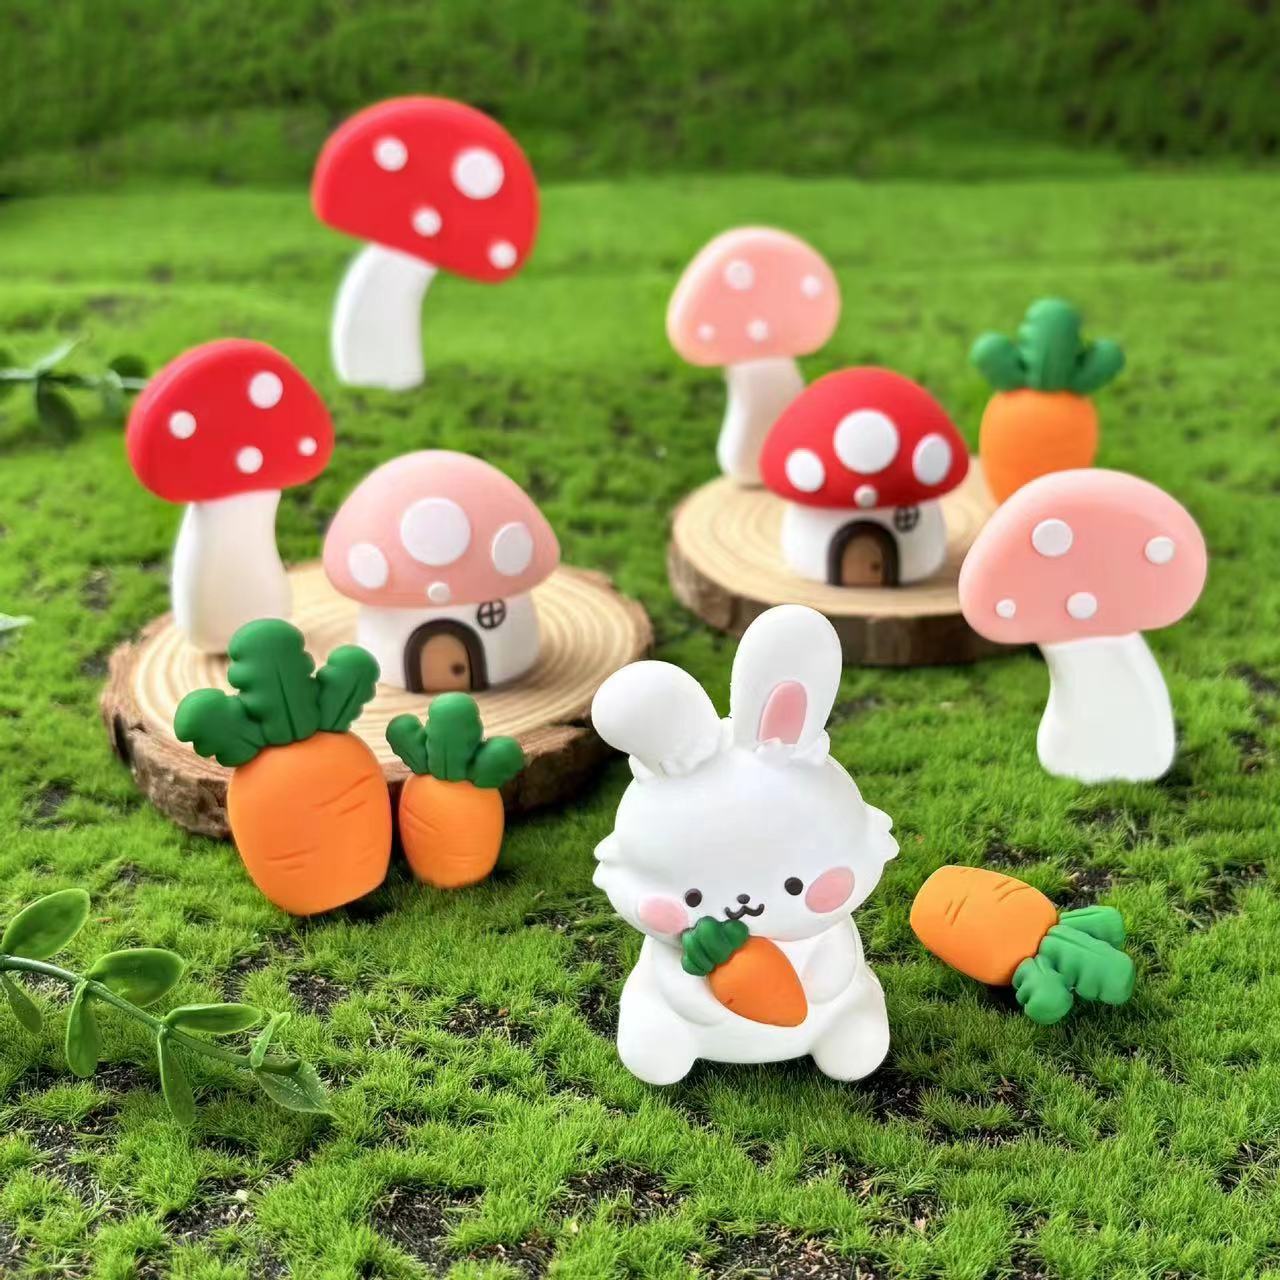 卡通可爱呆萌胡萝卜兔小动物玩偶摆件立体蘑菇屋烘焙蛋糕装饰插件